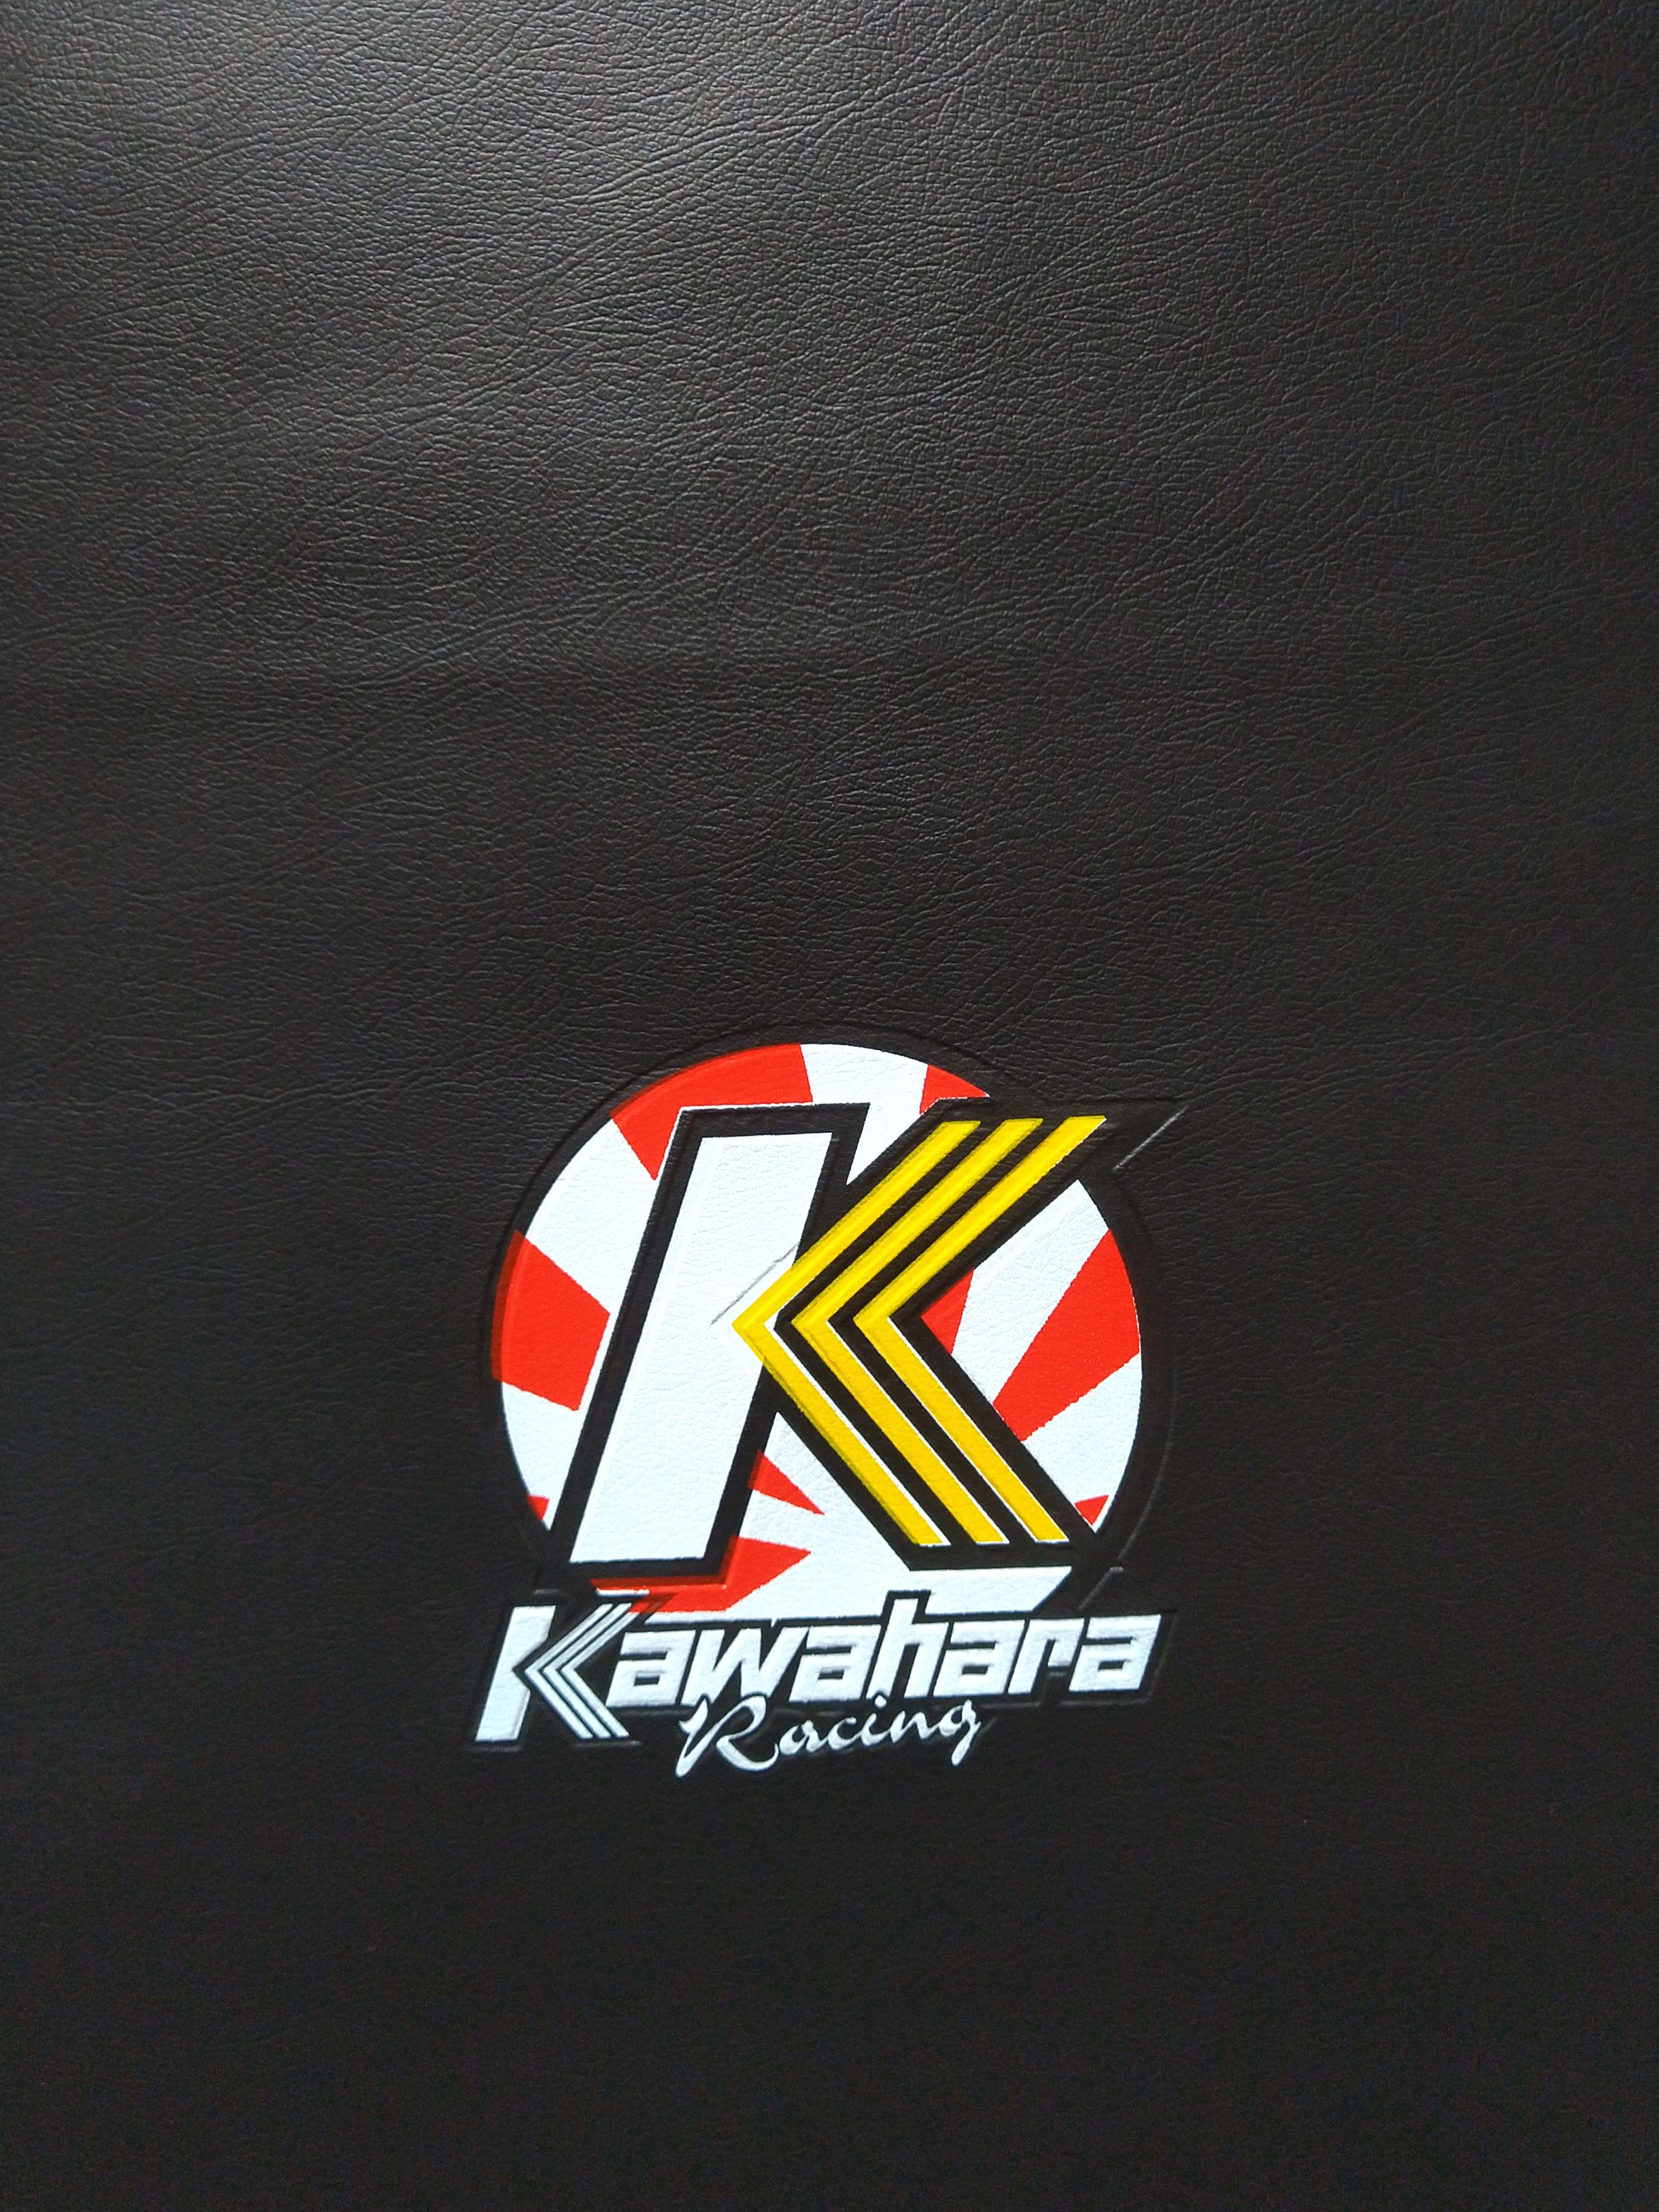 Download Wallpaper Kawahara Racing Nomer 16